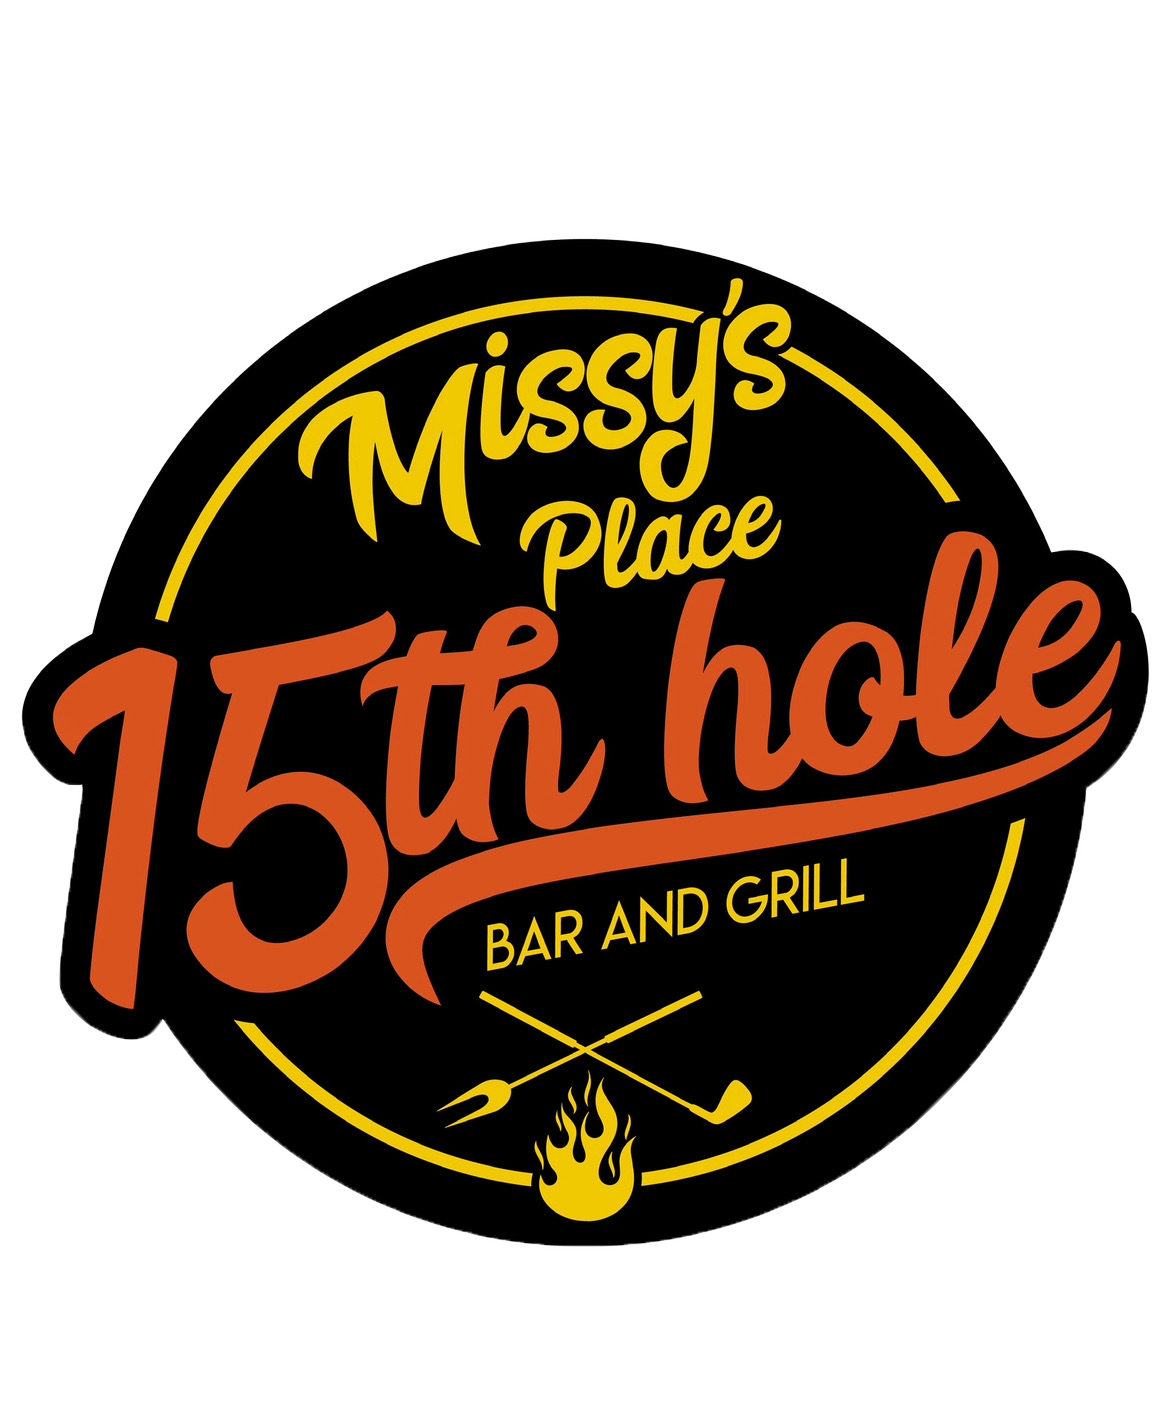 Missys 15th Hole Bar & Grill